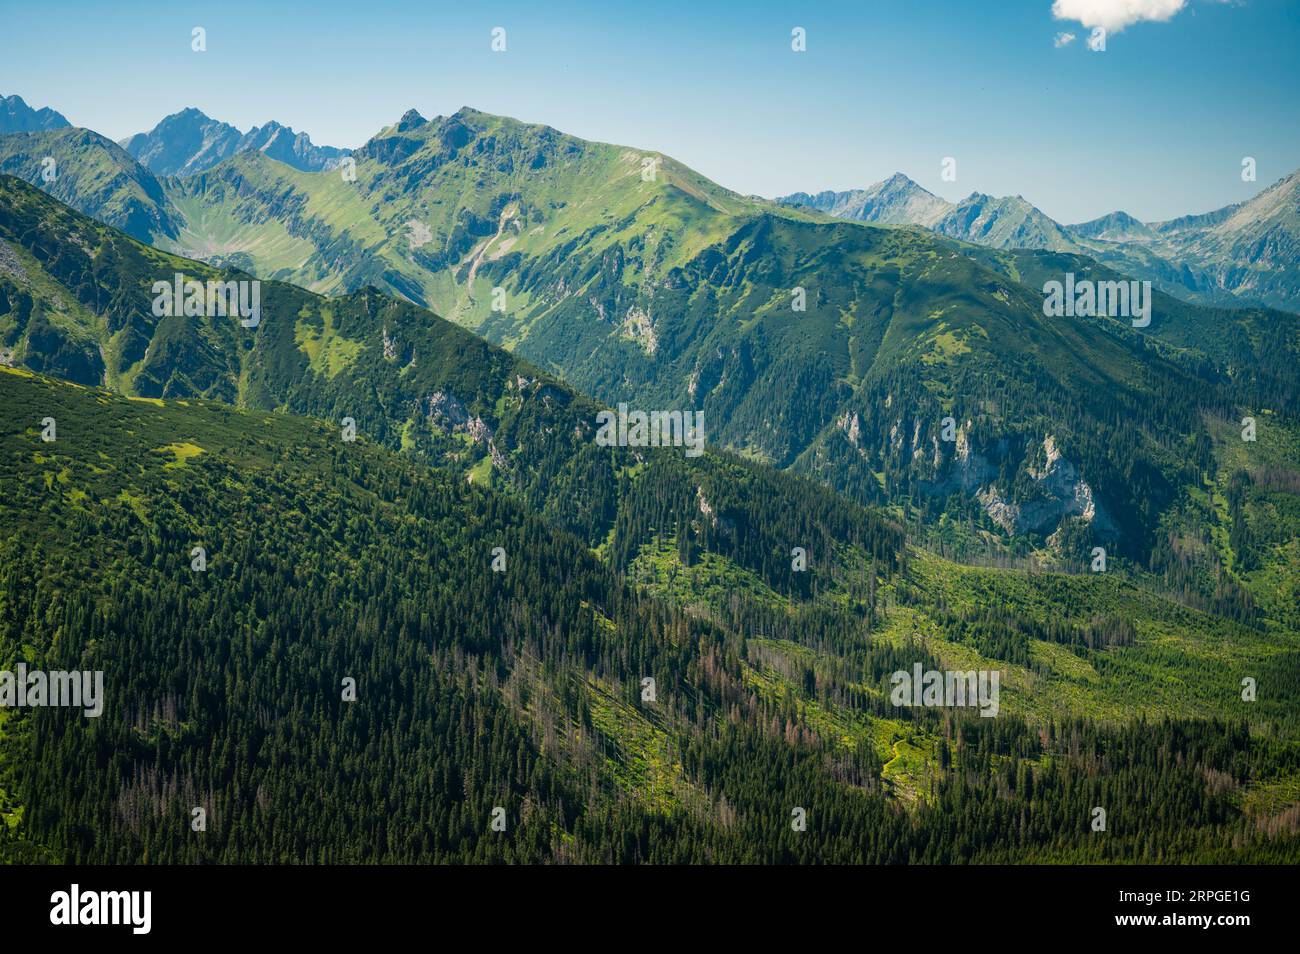 Altos Tatras, enmarcado por la belleza verde de los Tatras Belianske, una escena de pura magia de montaña debajo de un lienzo azul profundo Foto de stock